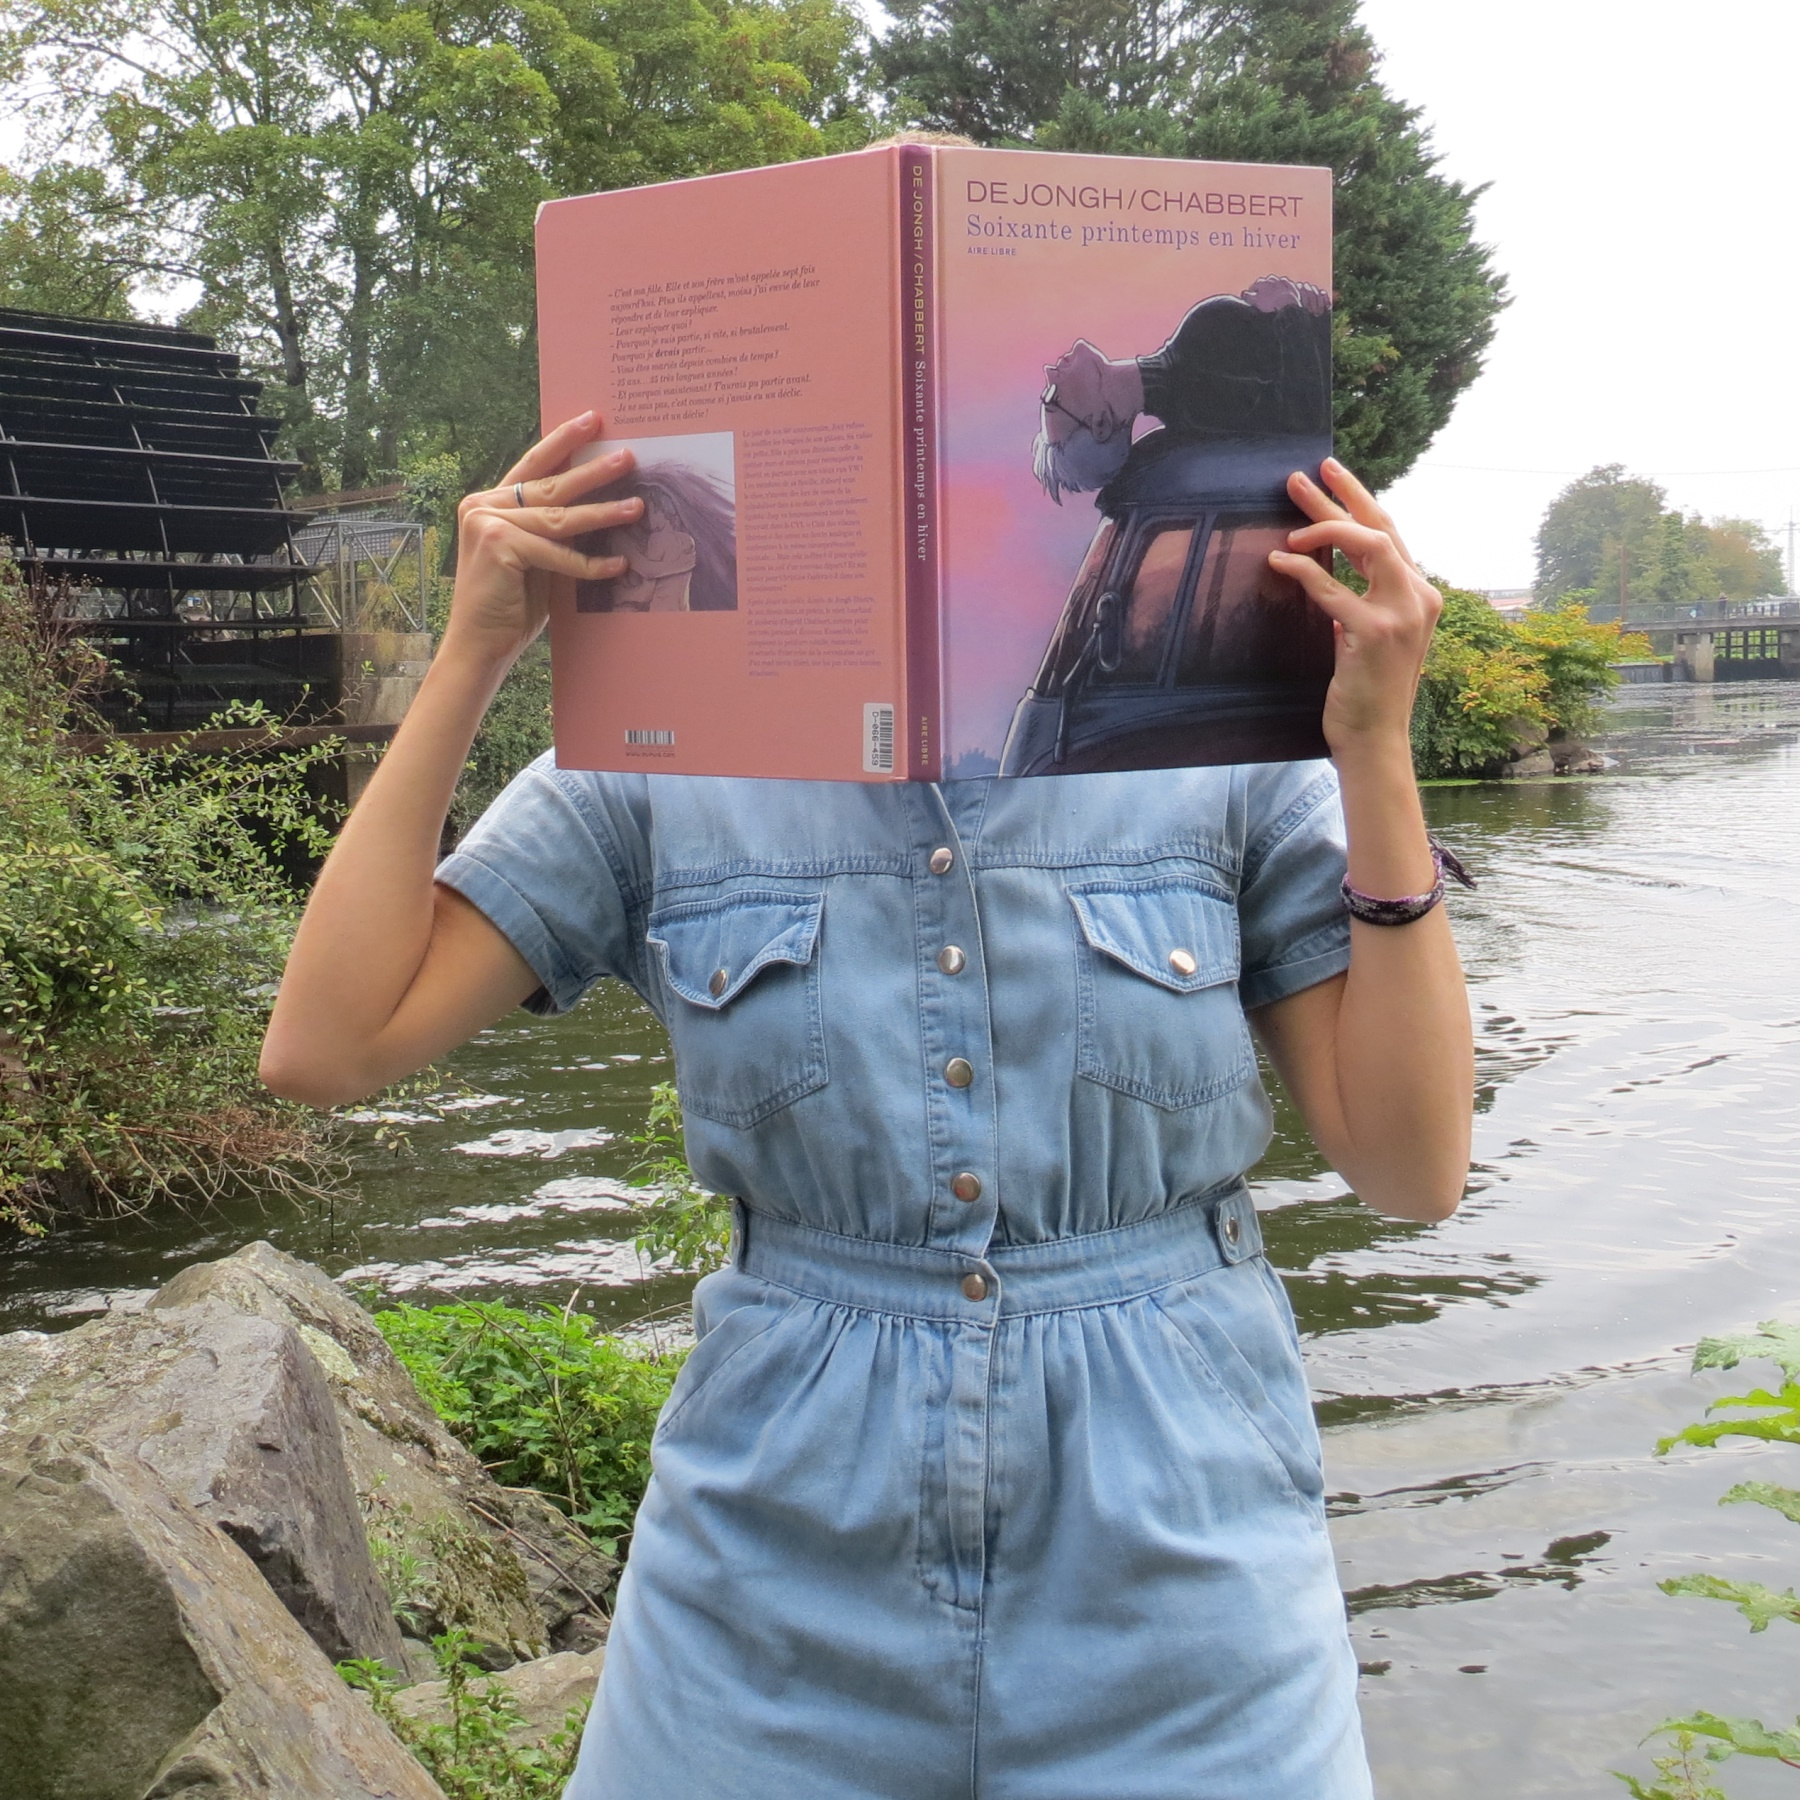 personne en combi en jean lisant Soixante Printemps en Hiver d’Ingrid Chabbert & de Jongh devant un moulin à eau